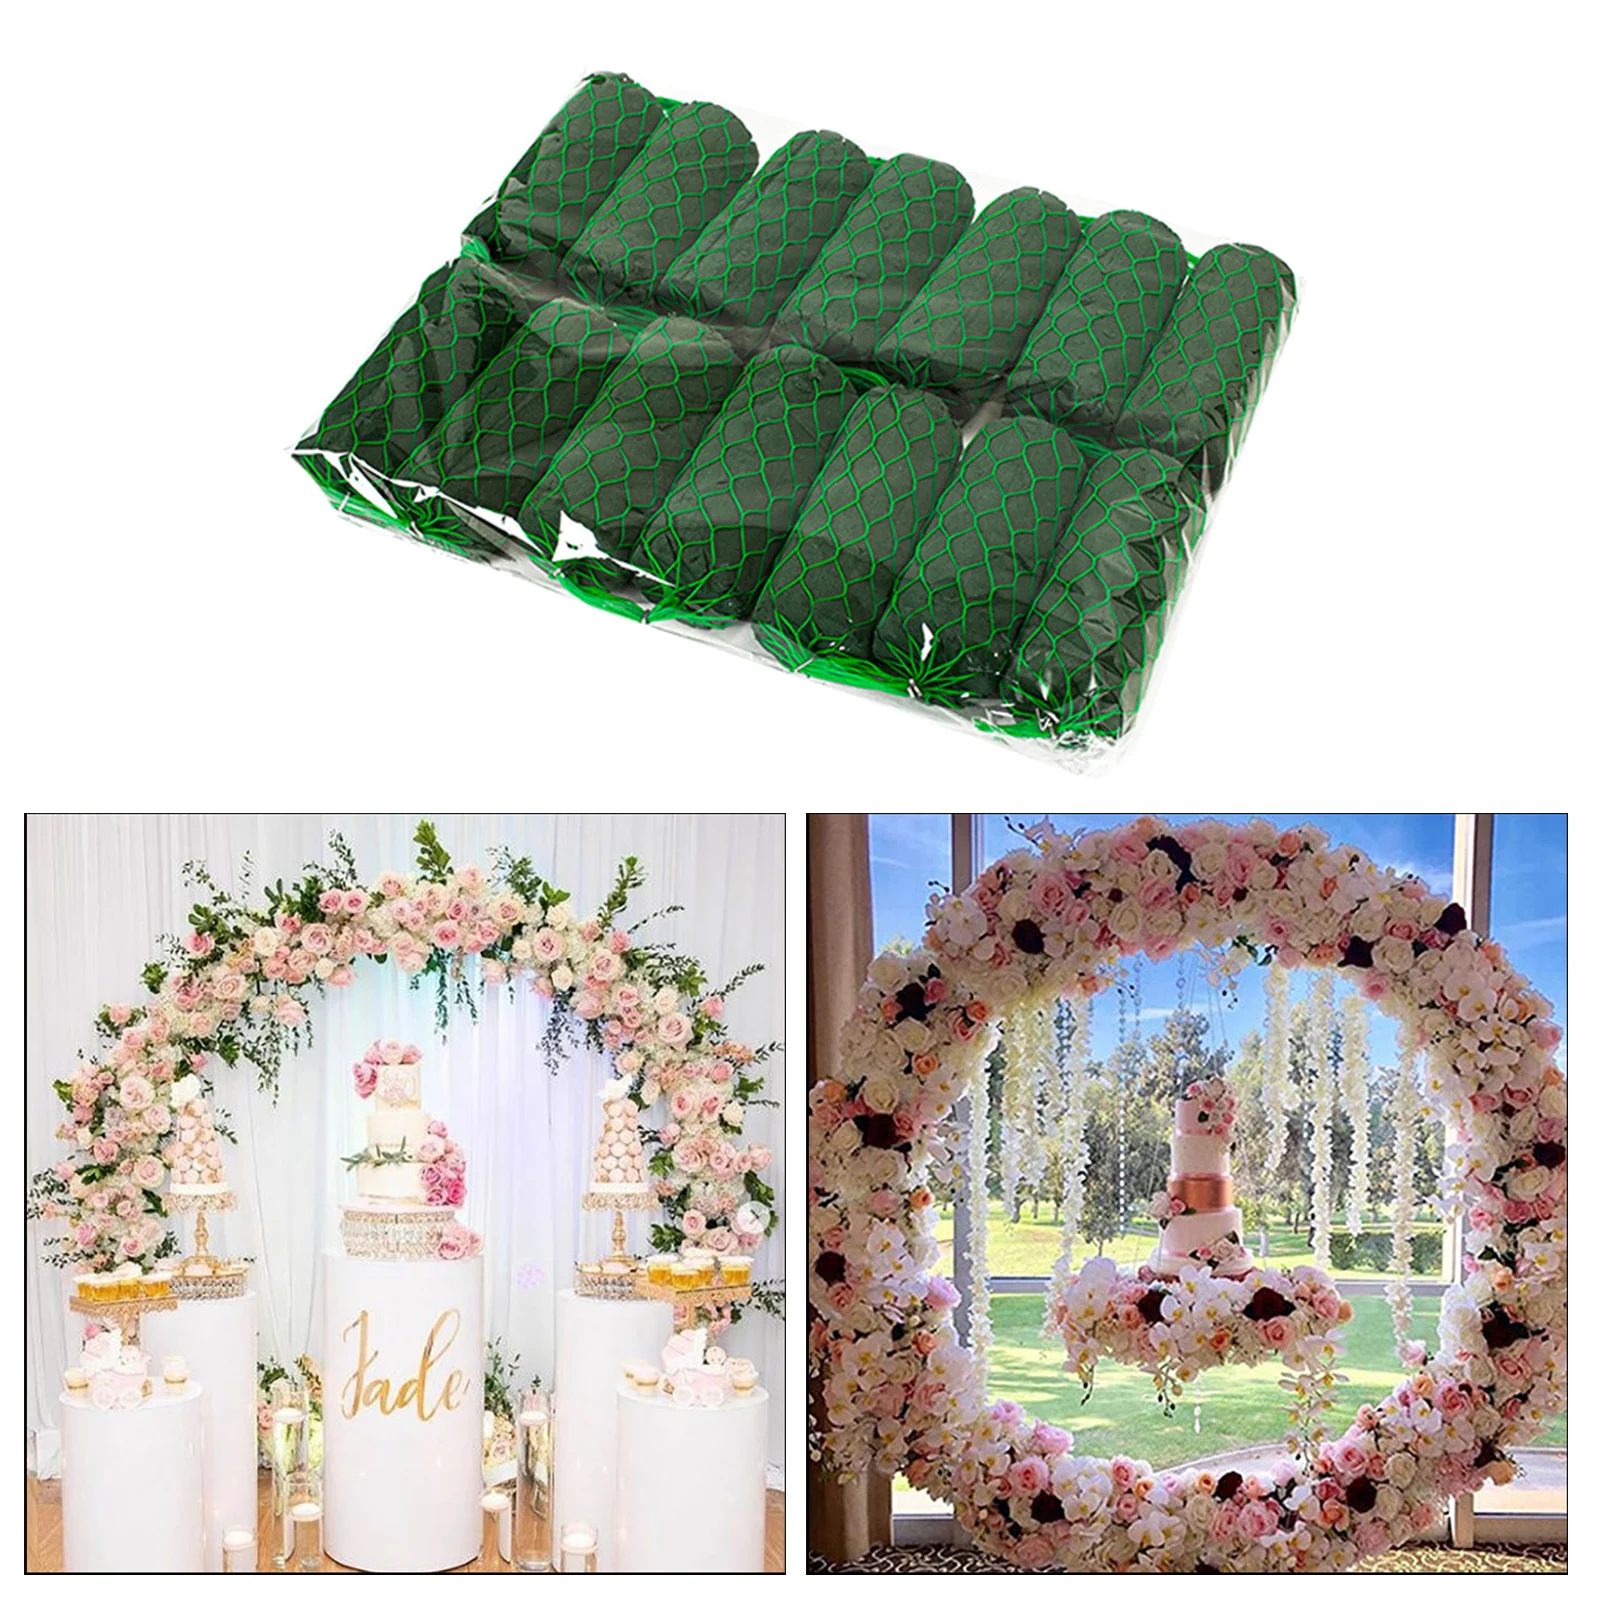 mariage HYLYING Lot de 14 blocs en mousse absorbant l'eau vacances support de fleurs pour porte d'arche florale en mousse humide pour décoration de maison 